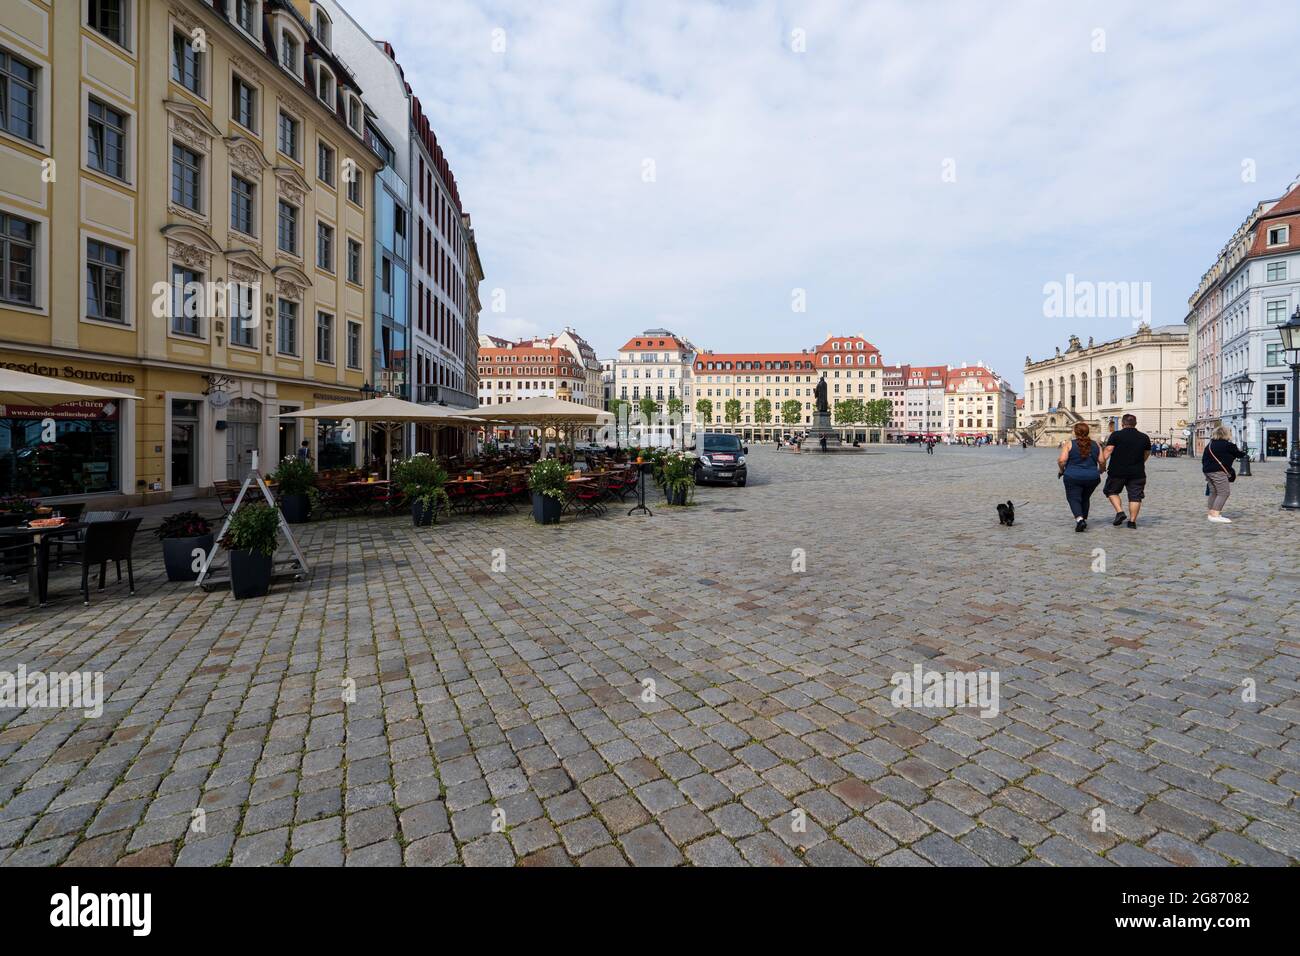 La vieille ville de Dresde par une journée ensoleillée Banque D'Images